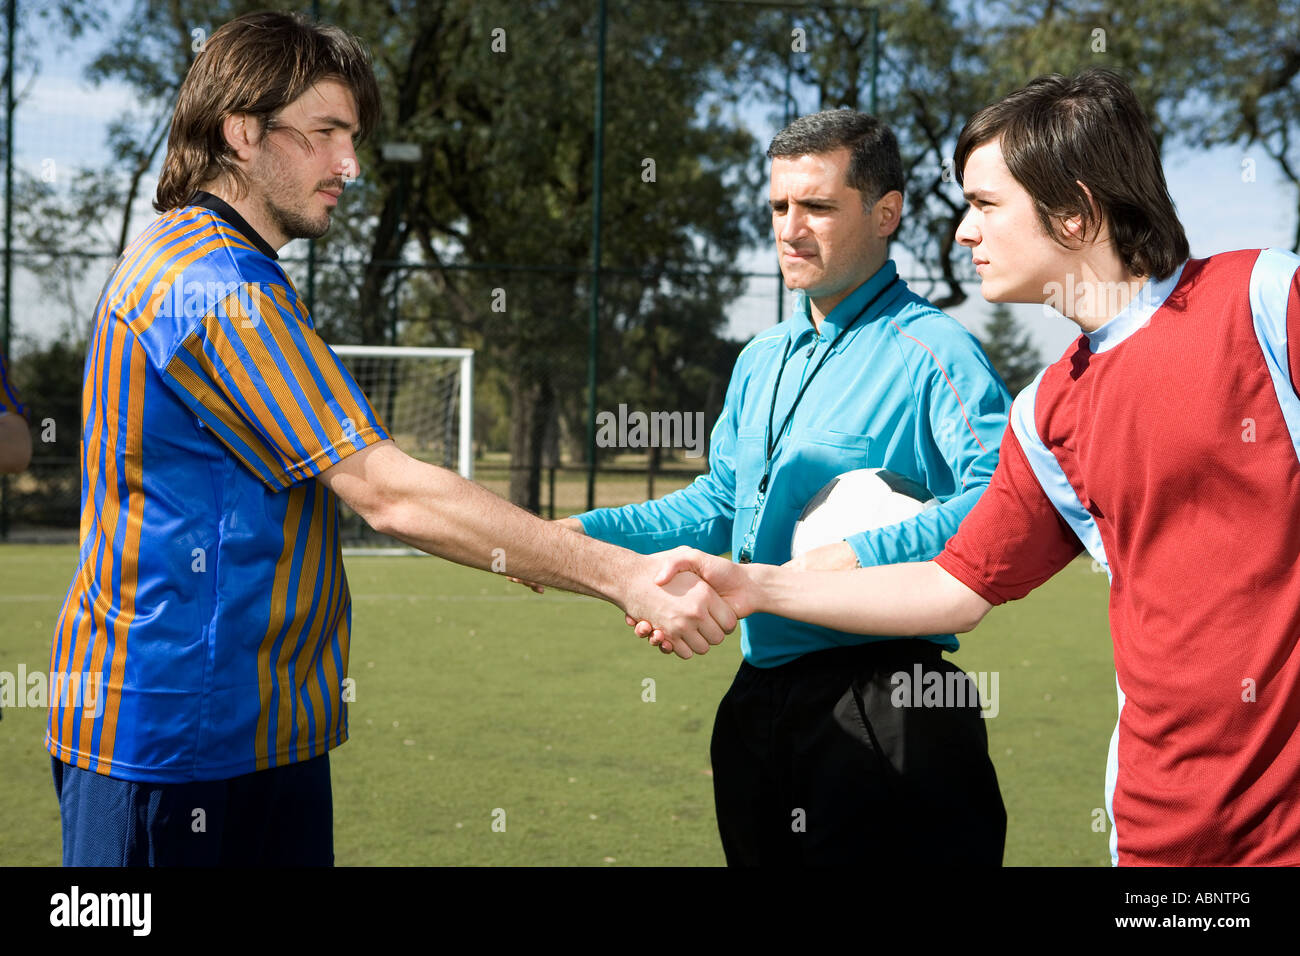 Les joueurs de soccer masculin shaking hands Banque D'Images